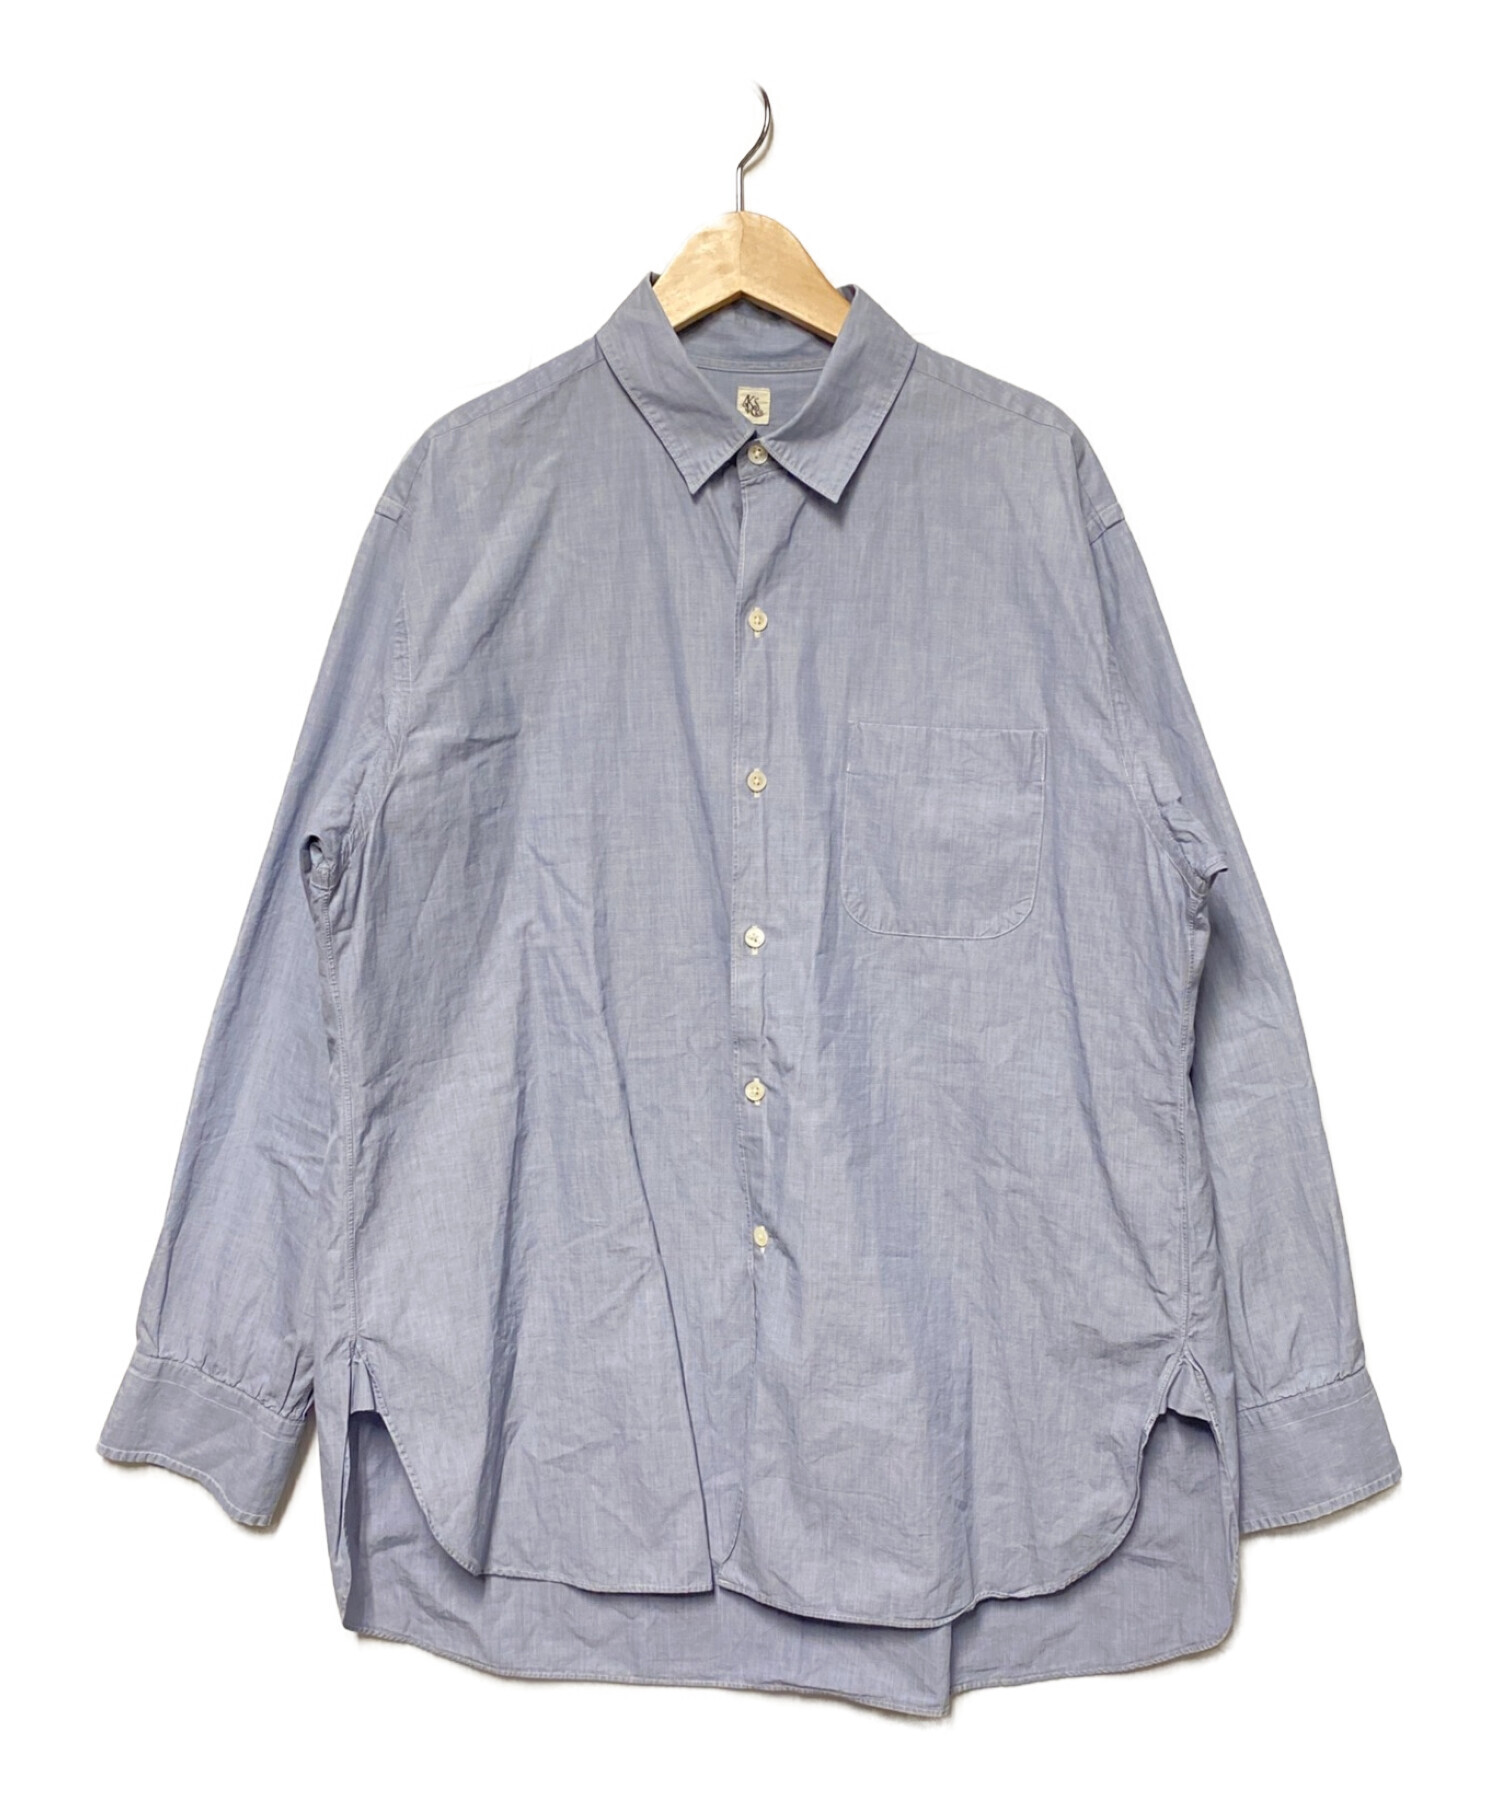 KAPTAIN SUNSHINE (キャプテンサンシャイン) Regular Collar Shirt スカイブルー サイズ:38